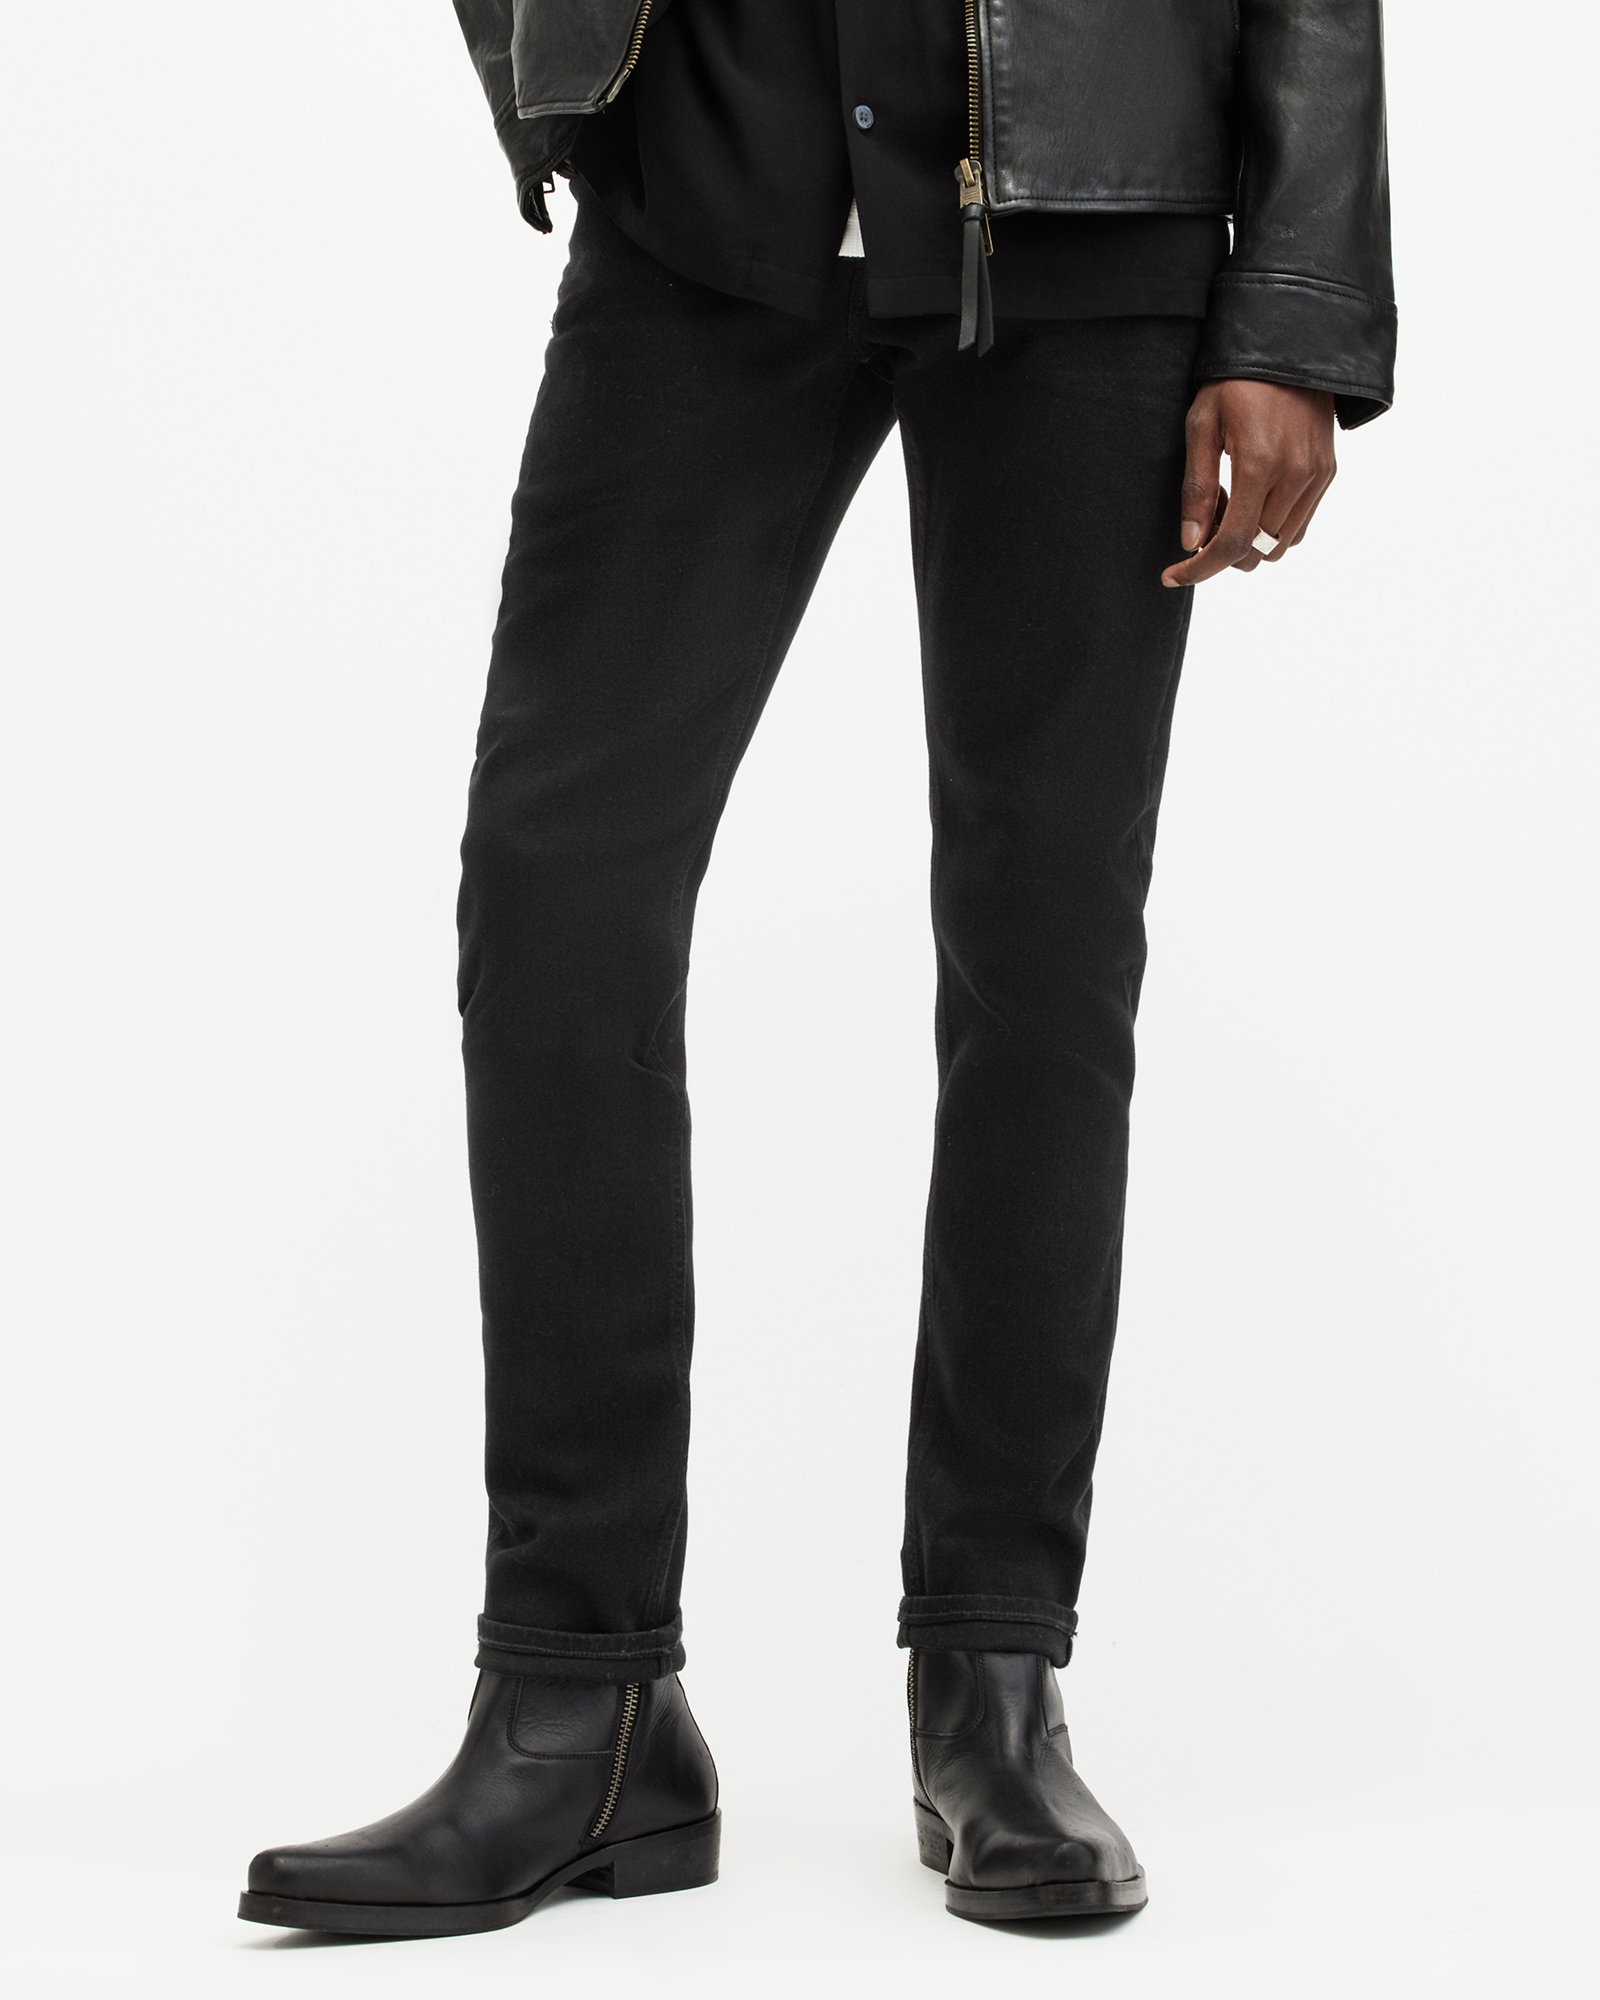 AllSaints Men's Cotton Traditional Rex Slim Jeans, Black, Size: 34/L30